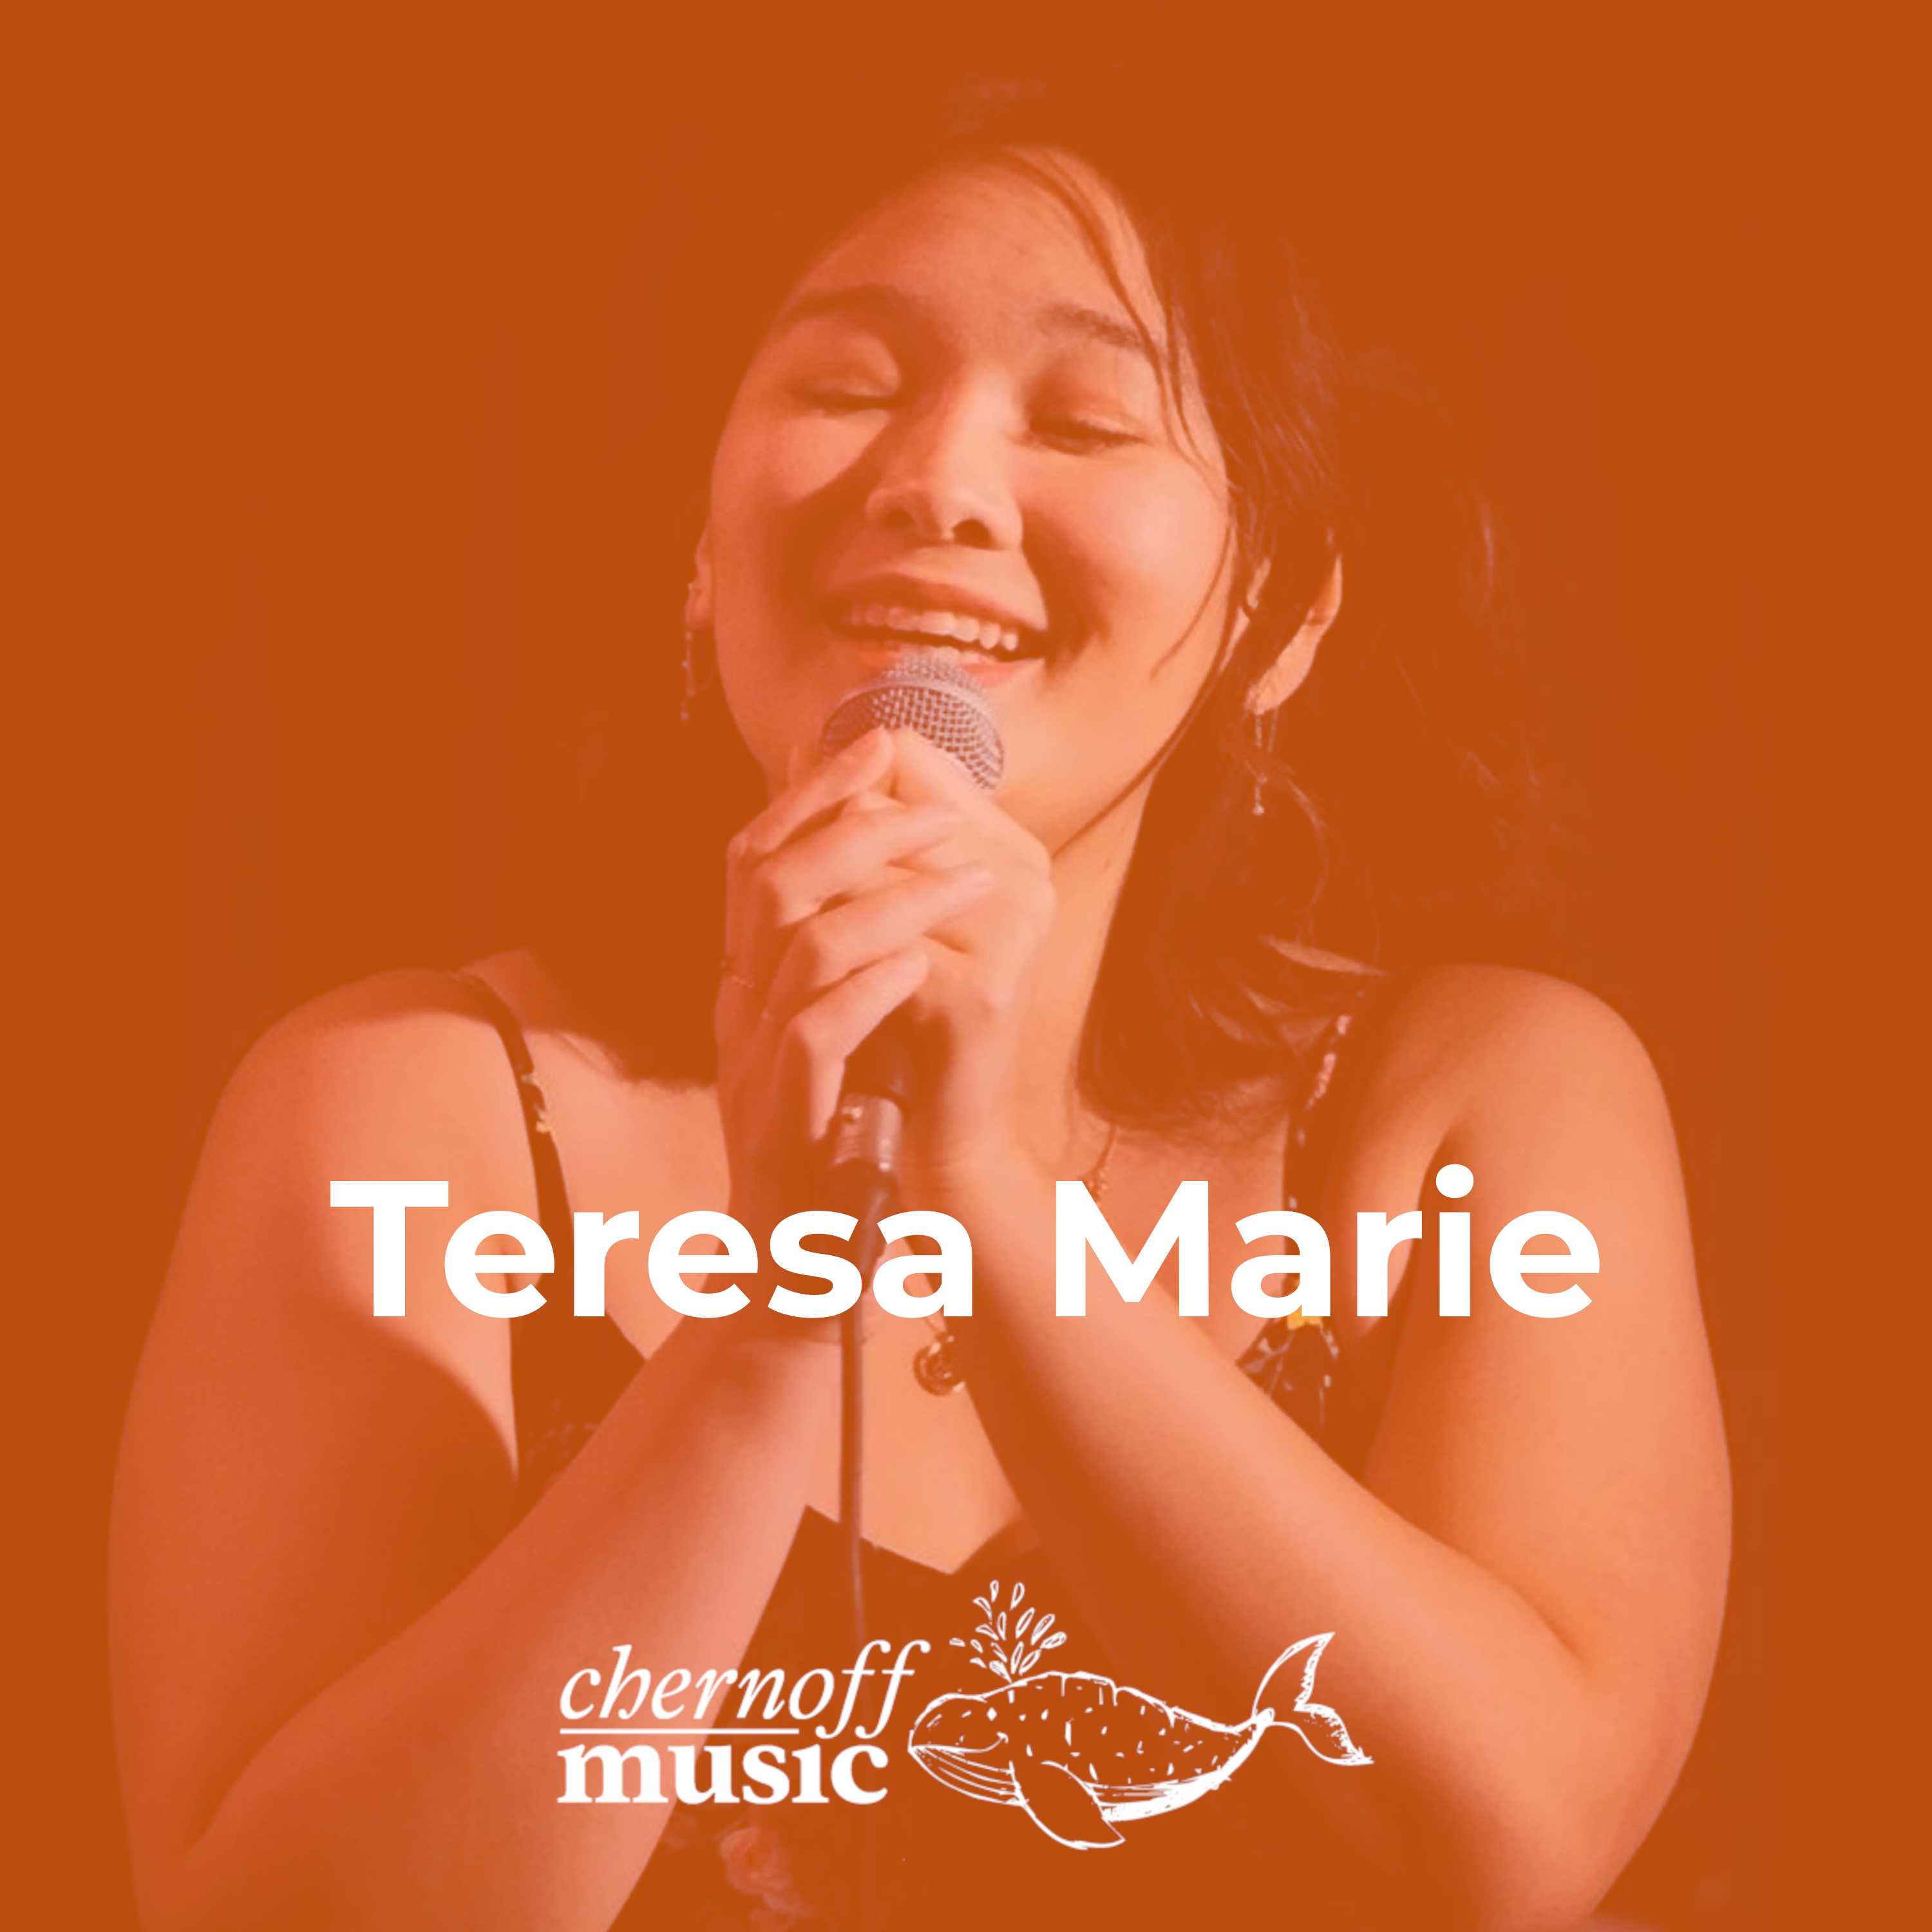 Teresa Marie: Vocalist, Quartet, Winner Winner, Europe